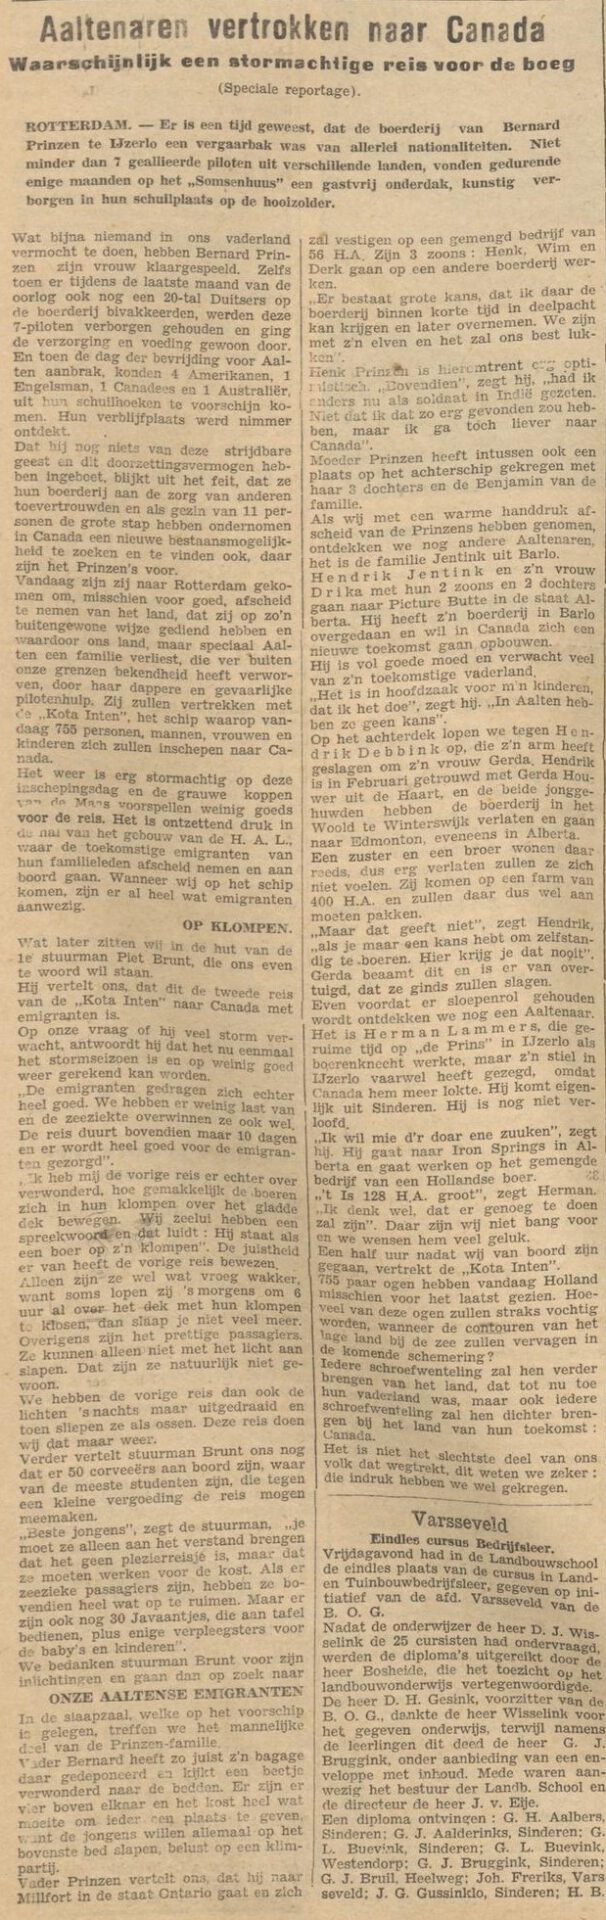 Aaltenaren vertrokken naar Canada - De Graafschapper, 10-04-1948